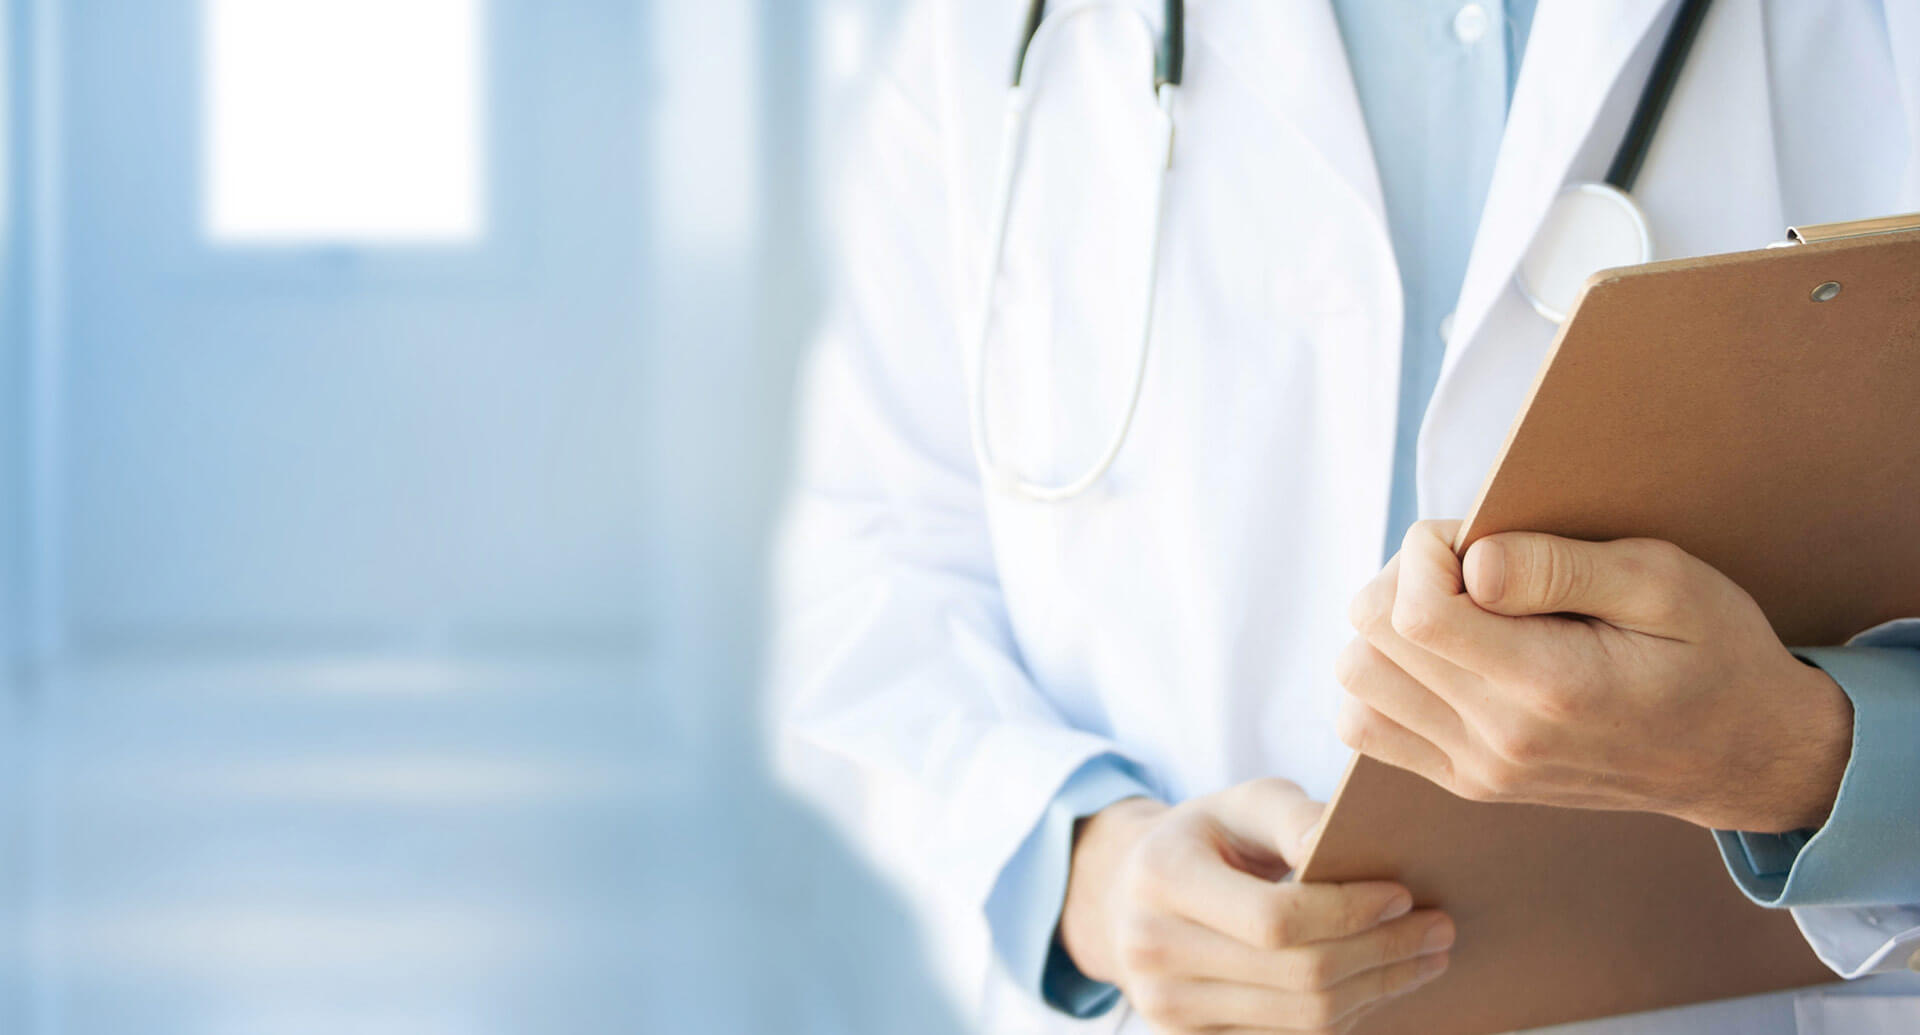 Nemocnice Blansko spouští elektronické objednávání na mamografické vyšetření